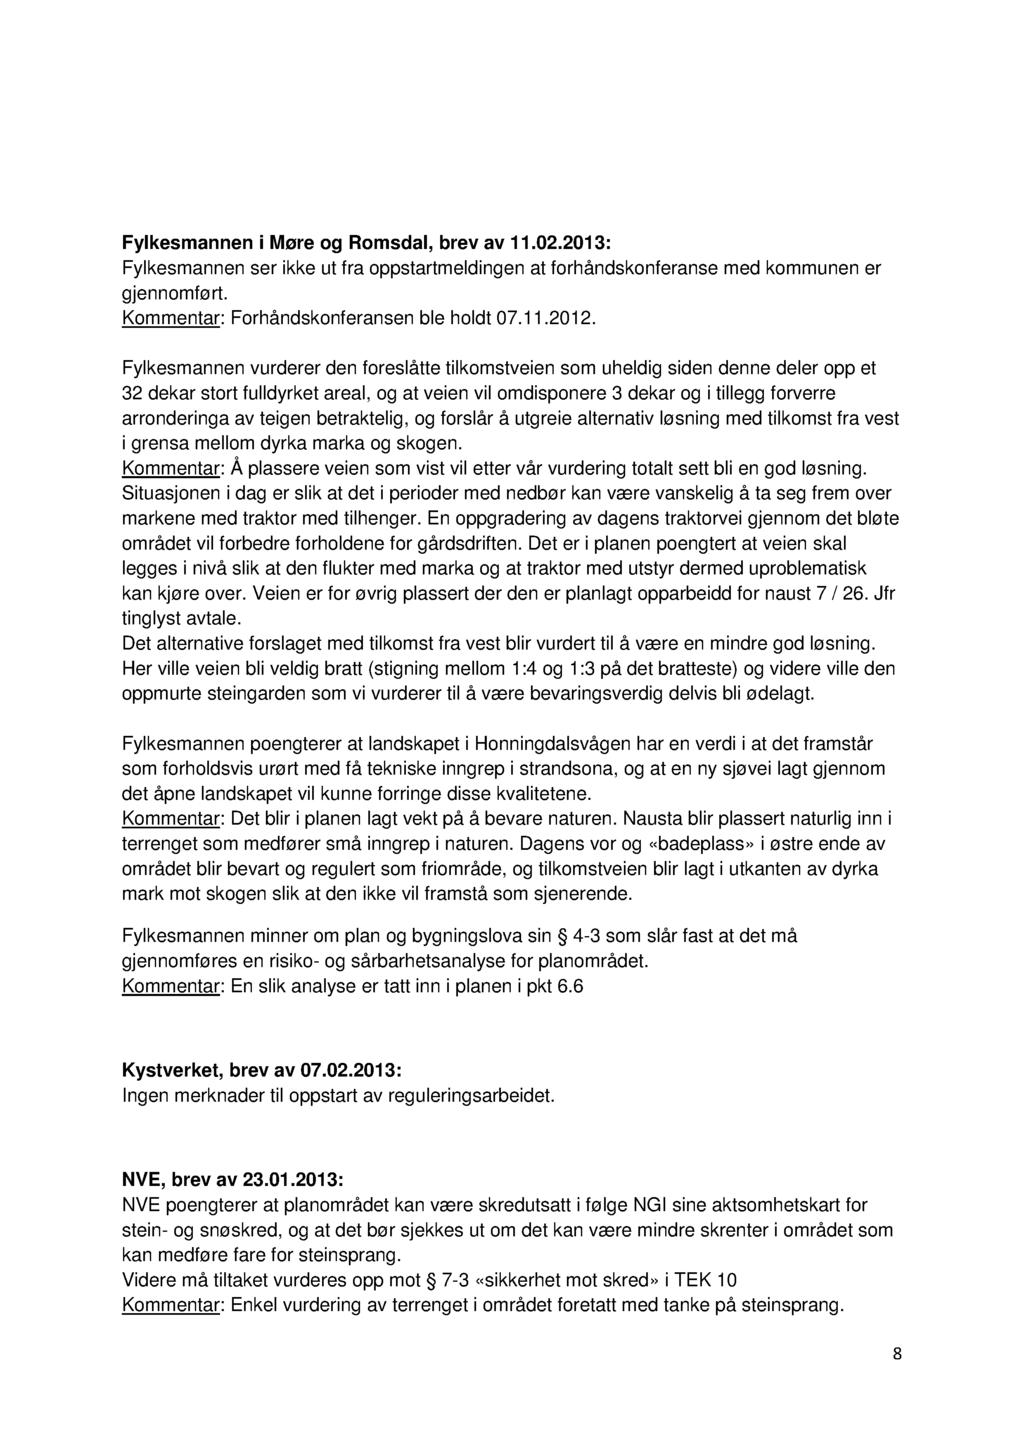 Fylkesmannen i Møre og Romsdal, brev av 11.02.2013: Fylkesmannen ser ikke ut fra oppstartmeldingen at f orhåndskonferanse med kommunen er gjennomført. Kommentar: Forhåndskonferansen ble holdt 07.1 1.